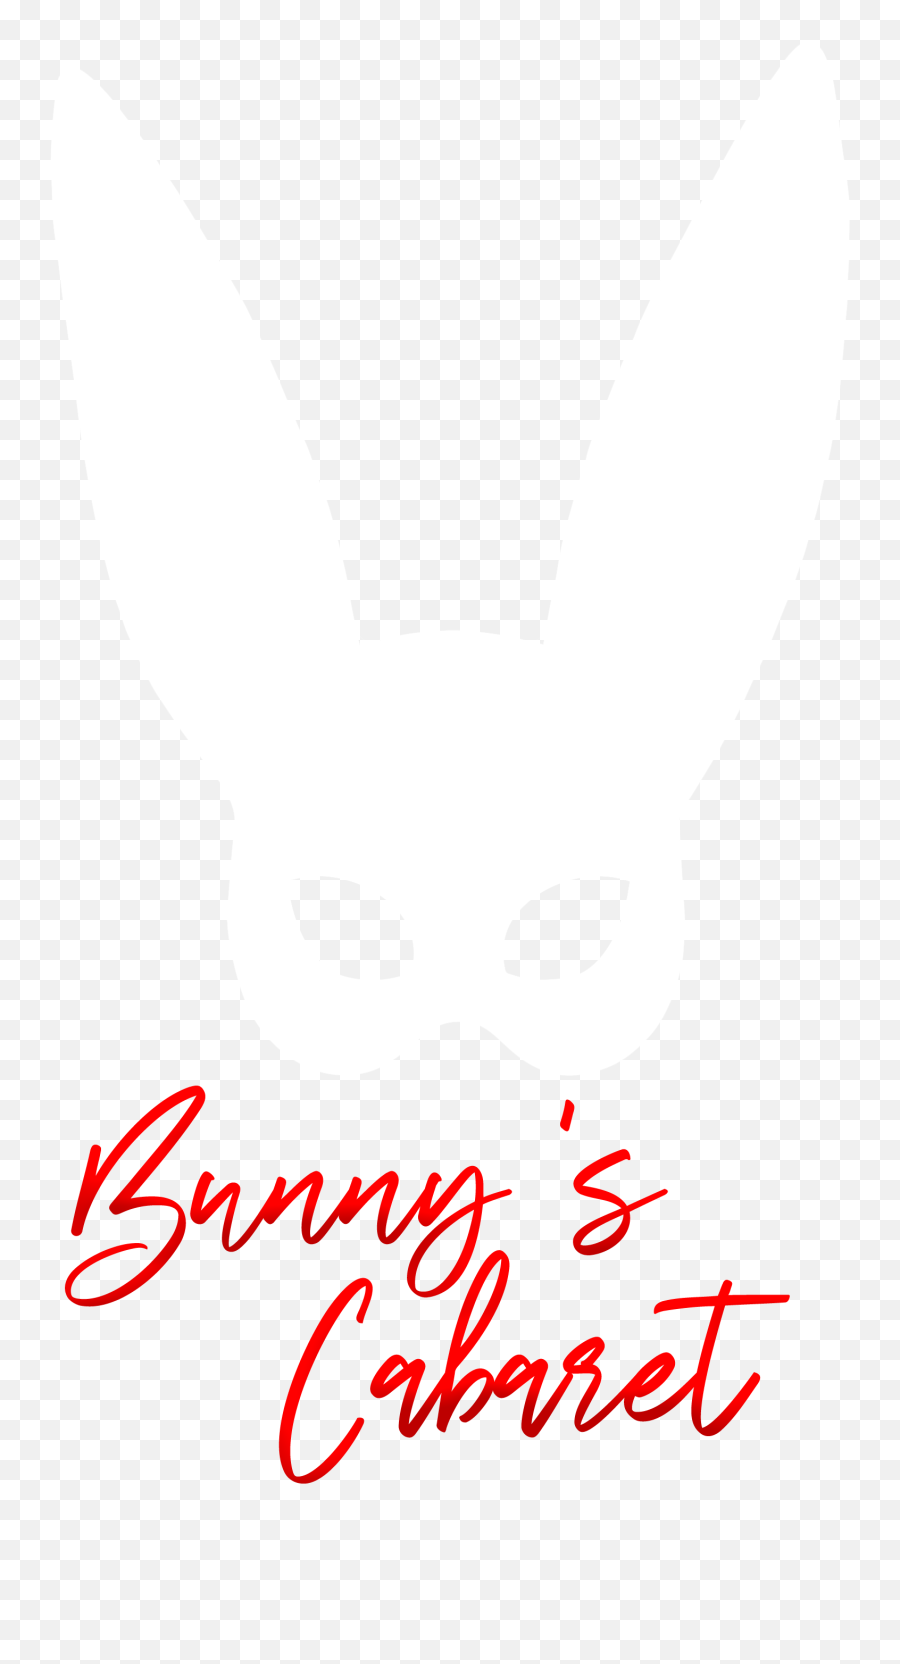 Bunnys Cabaret - Dot Png,Cabaret Logo